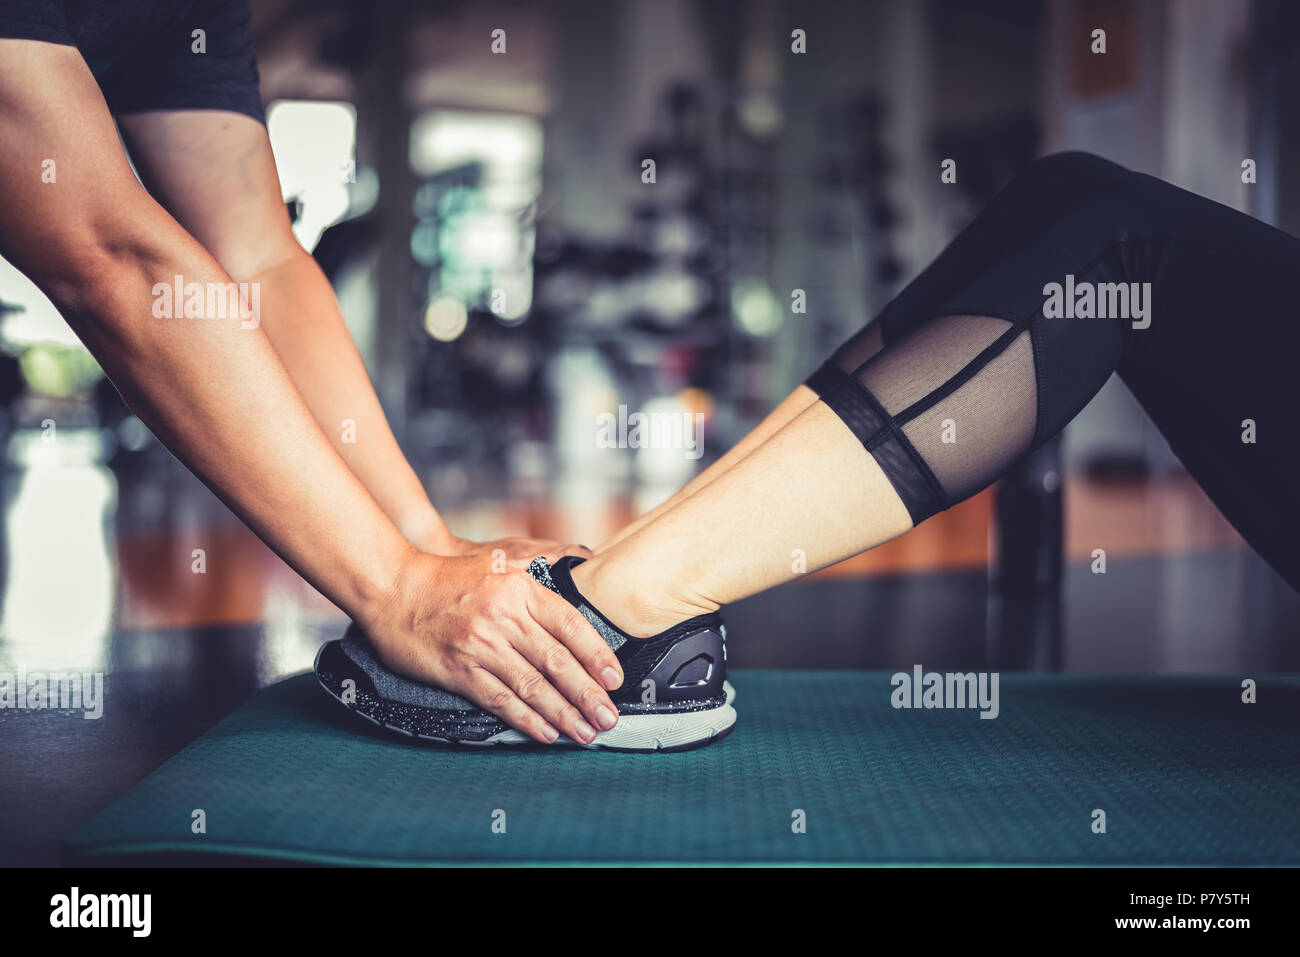 Hande Von Fitness Trainer An Fitness Frau Beine Training Crunch Twist Workout Gesunde Und Healthcare Ubung Und Starke Thema Stockfotografie Alamy